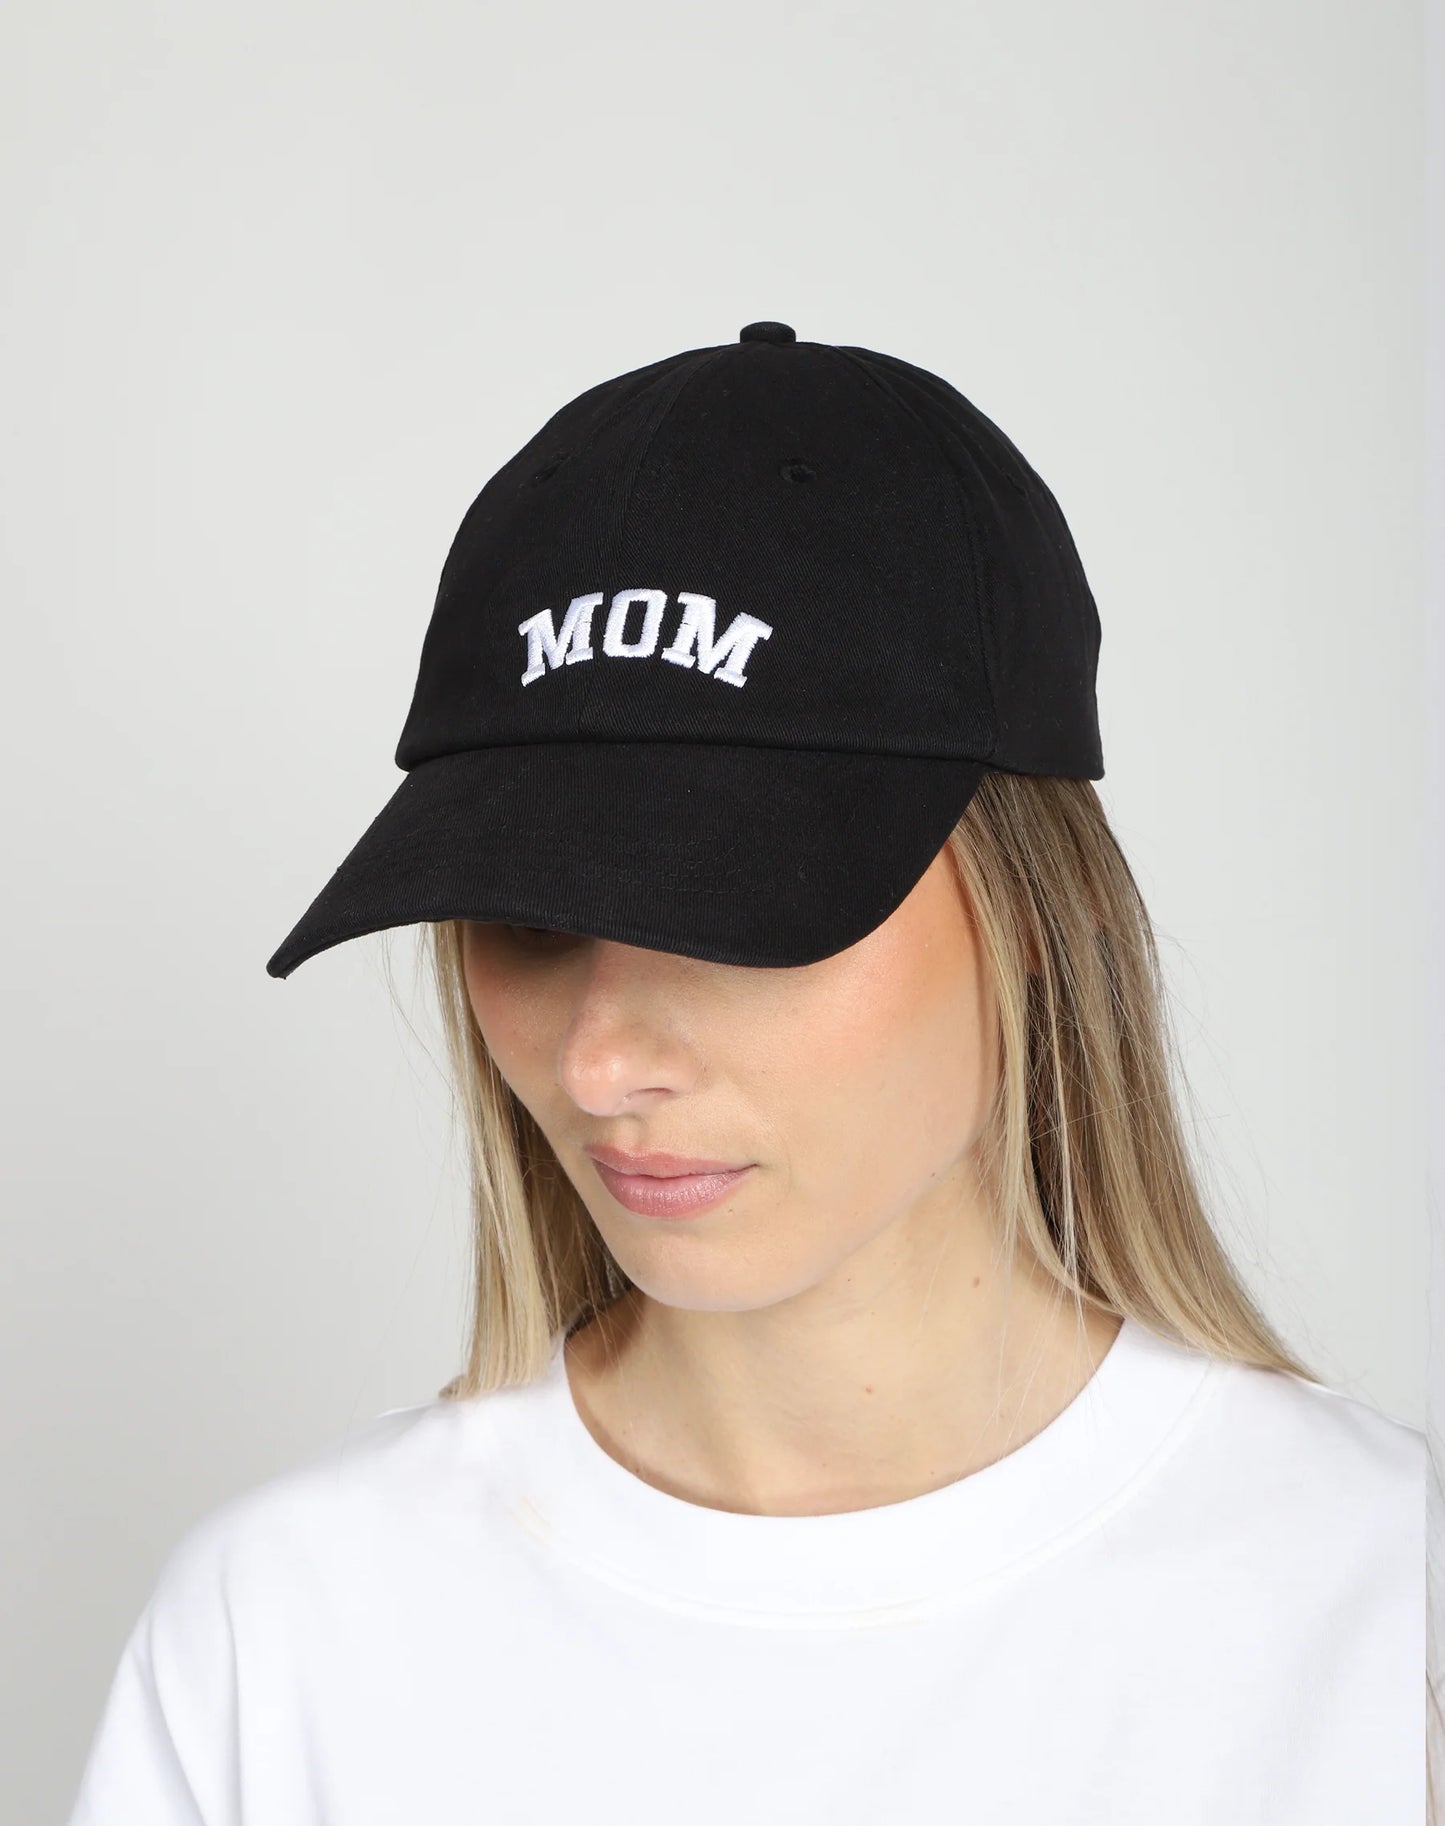 The "MOM" Baseball Cap | Sage or Black Brunette the Label